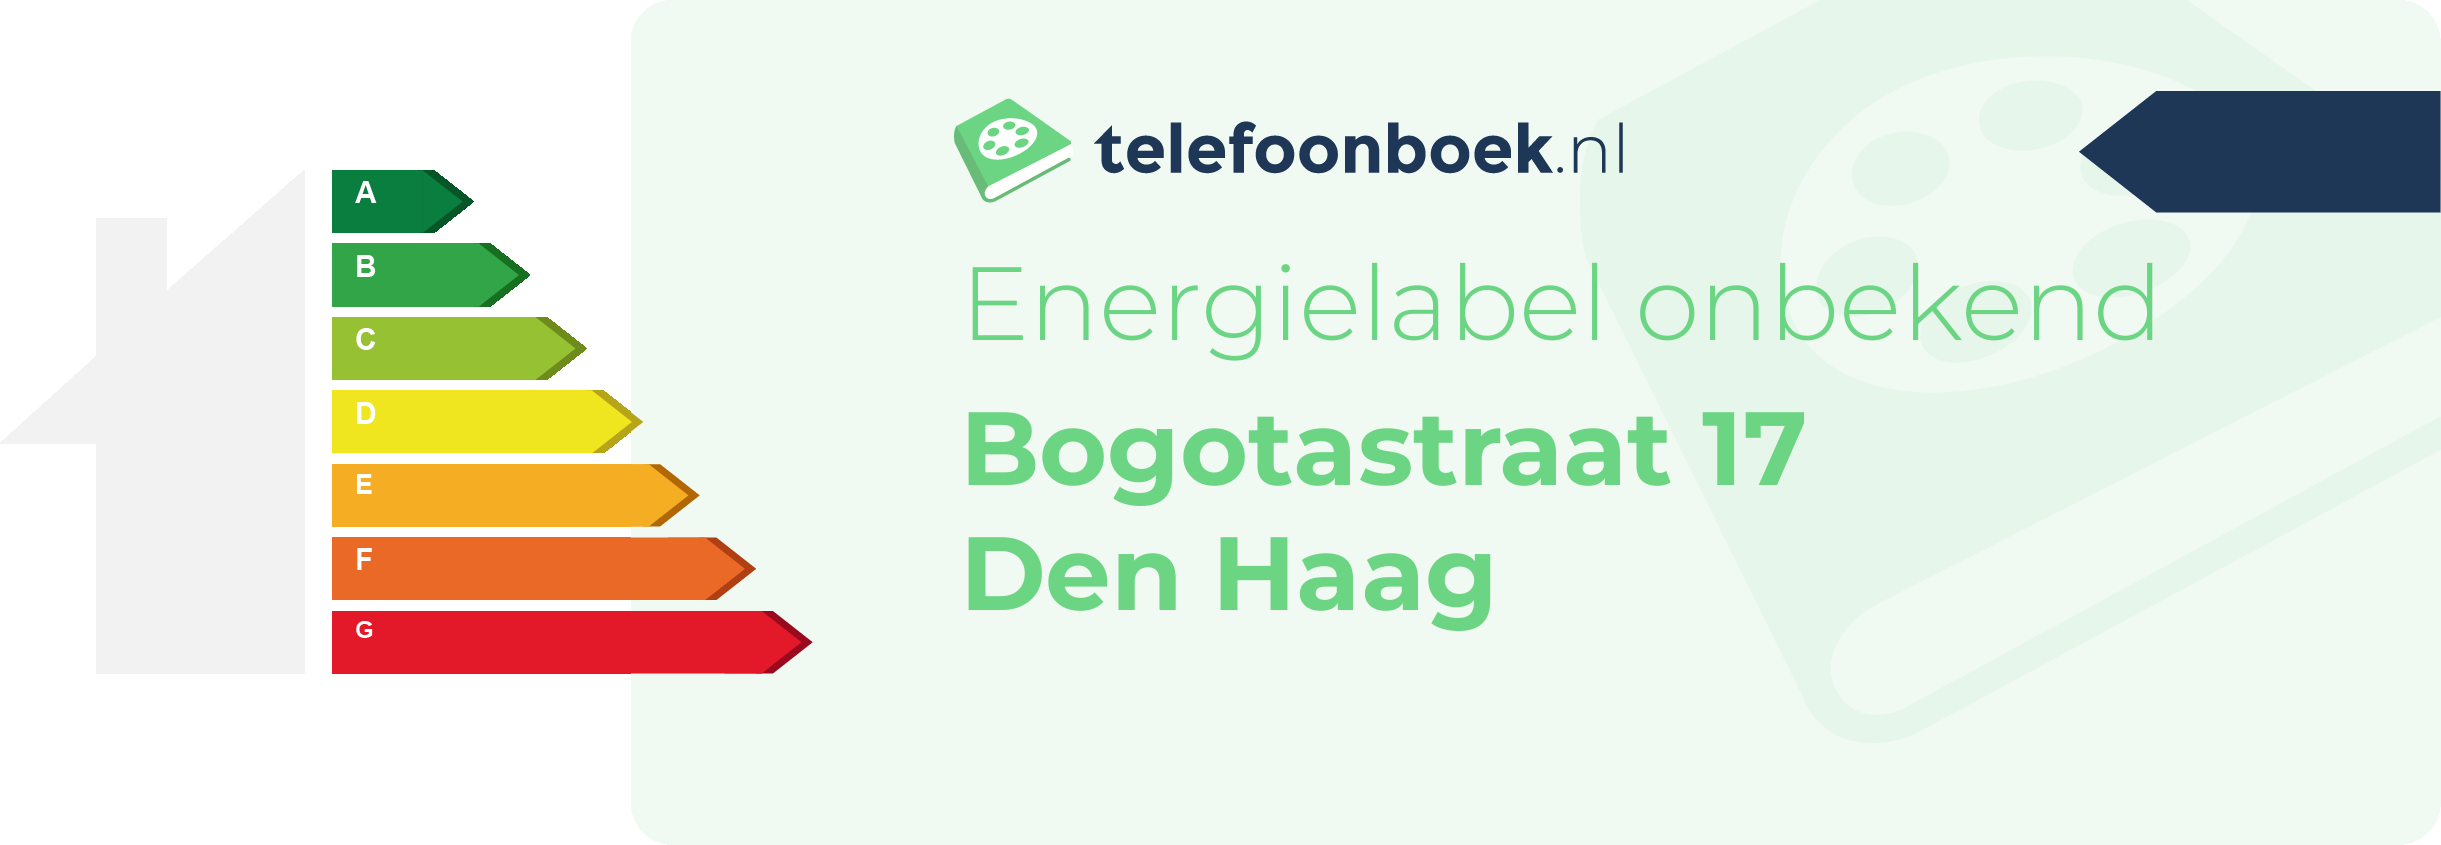 Energielabel Bogotastraat 17 Den Haag